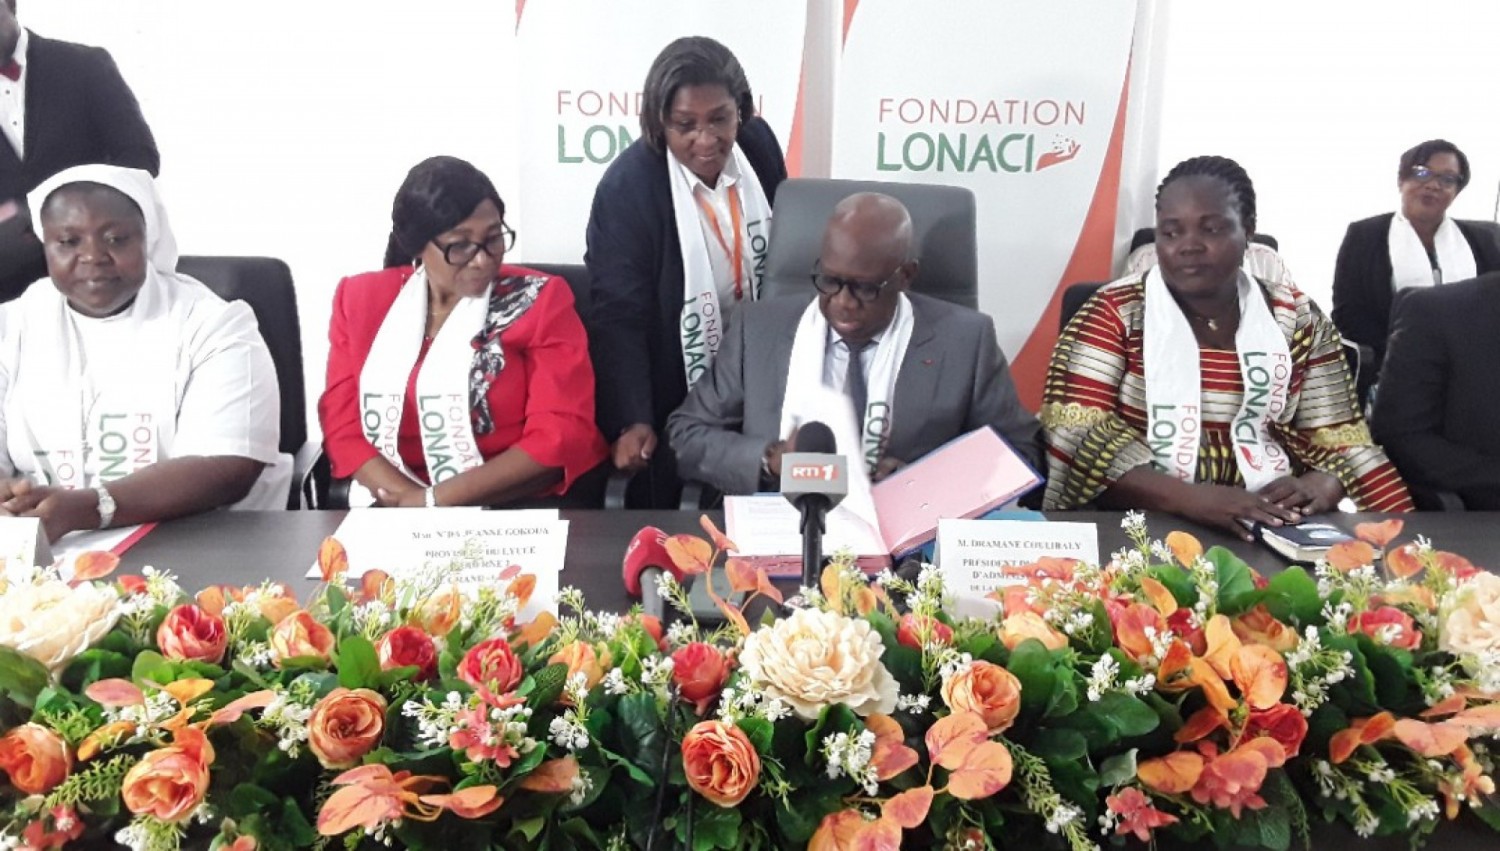 Côte d'Ivoire:  La Fondation LONACI réhabilite des œuvres sociales à hauteur de 93 millions de FCFA pour le lycée de Grand-Bassam, Akouédo-village et la pouponnière d'Adiaké